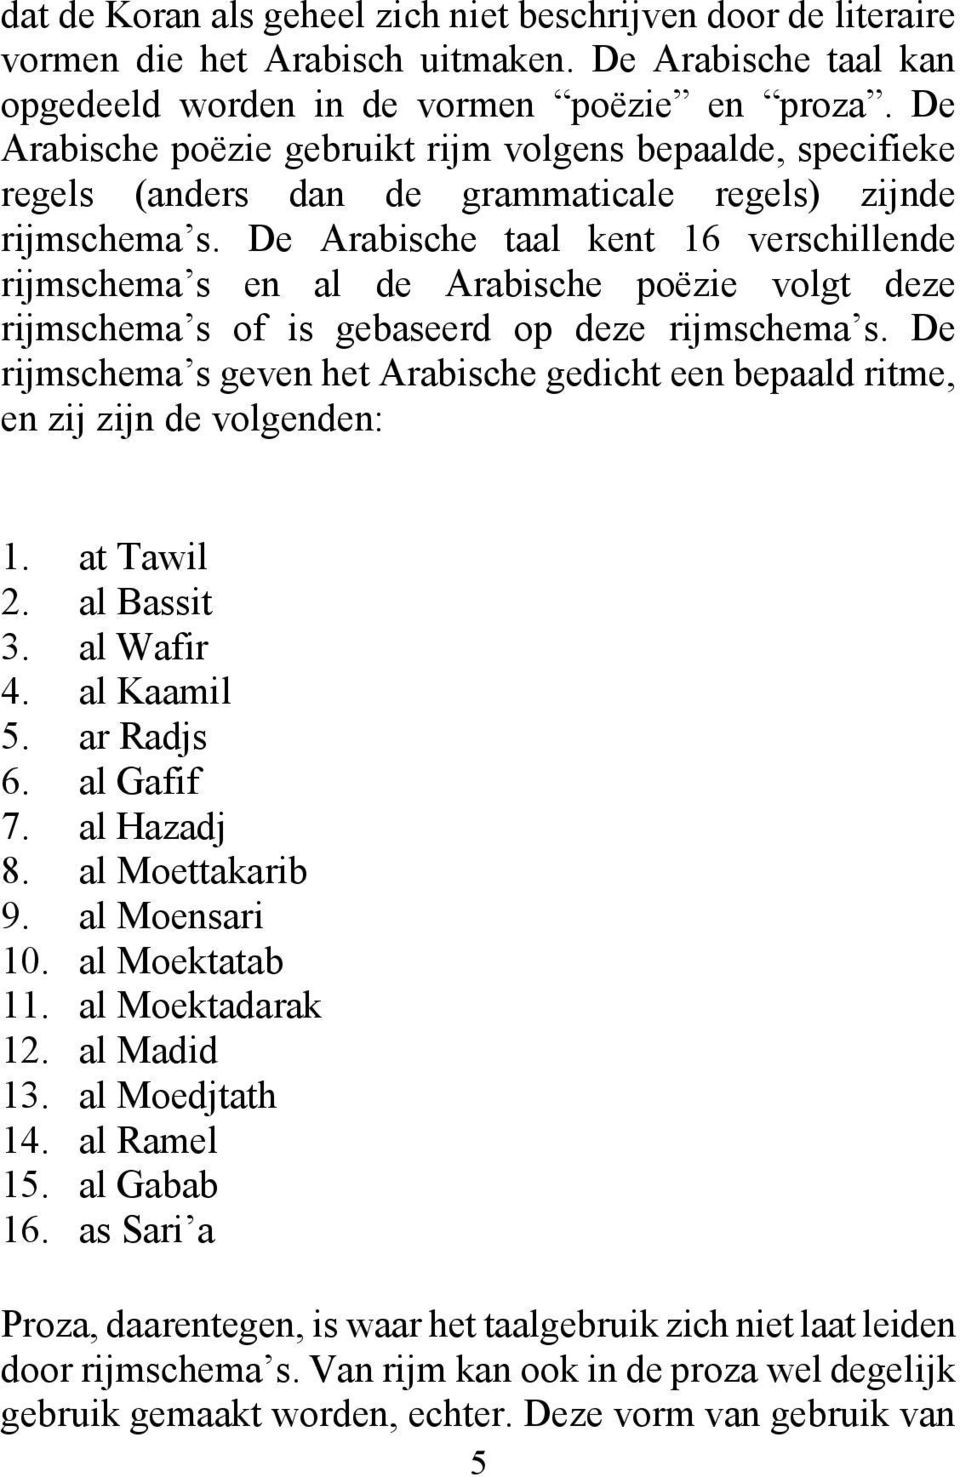 De Arabische taal kent 16 verschillende rijmschema s en al de Arabische poëzie volgt deze rijmschema s of is gebaseerd op deze rijmschema s.